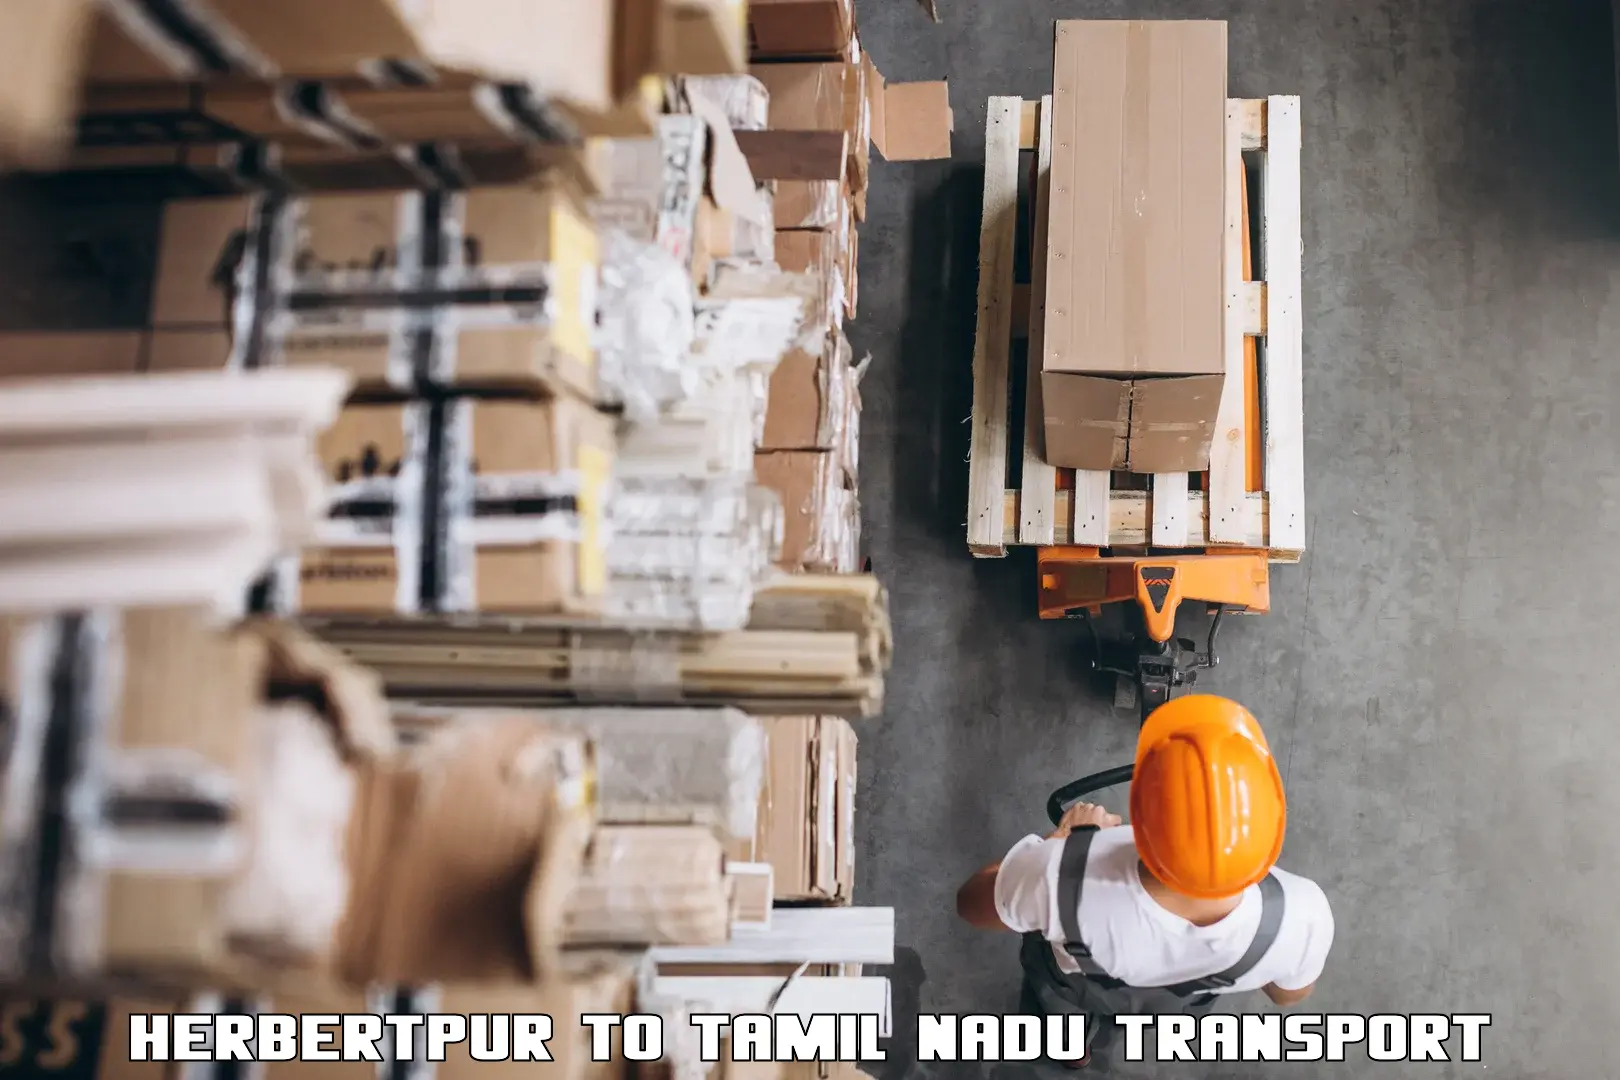 Truck transport companies in India Herbertpur to Ambur